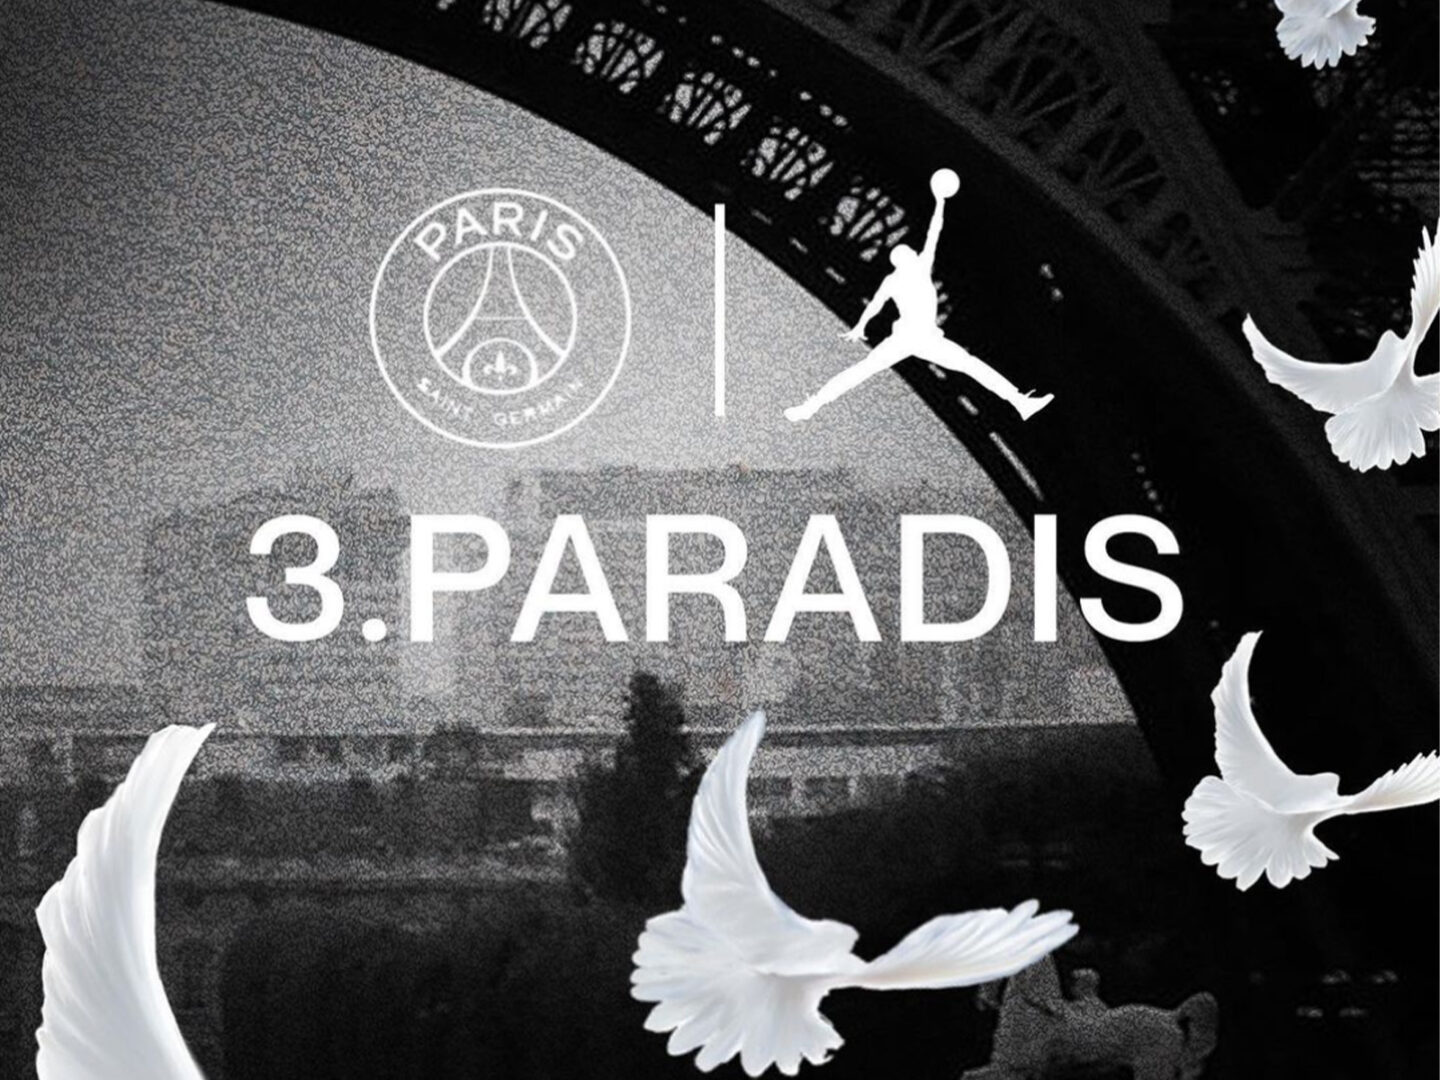 PSG’s second kit via 3.PARADIS